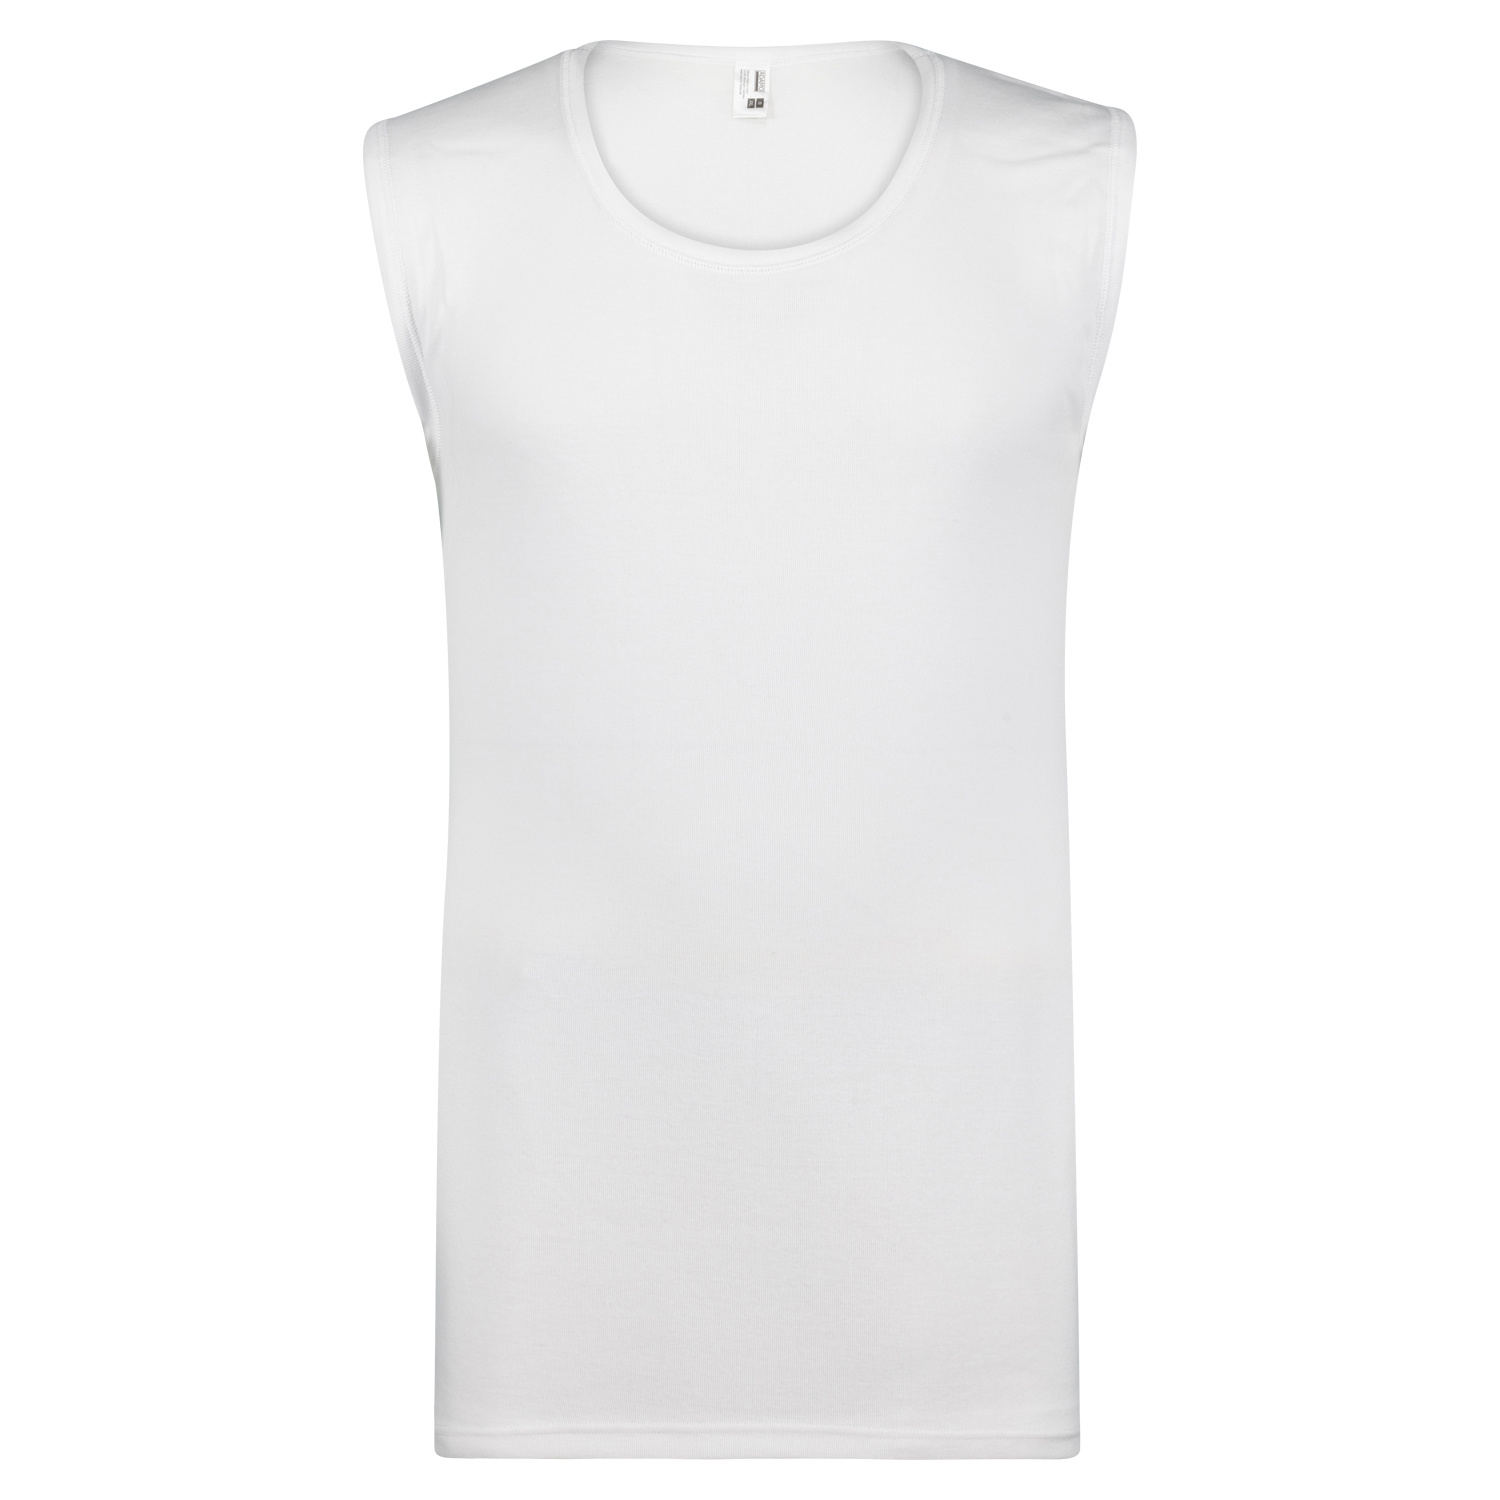 T-shirt blanc de ville sans manches ADAMO, grandes tailles jusqu'à 20 ans